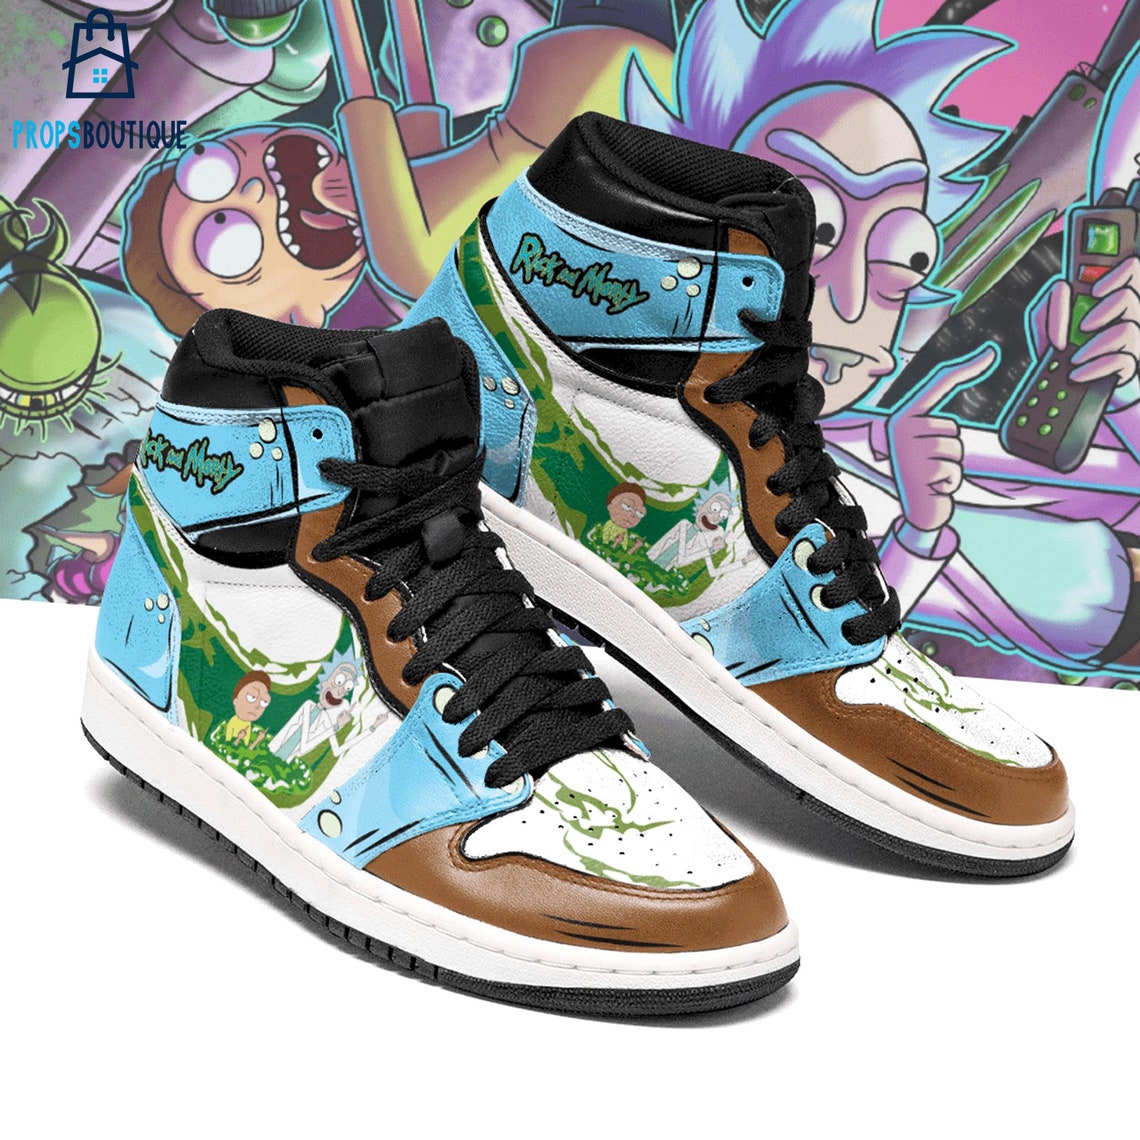 Rick and Morty Air Jordan Sneakers AJ1121 | Etsy